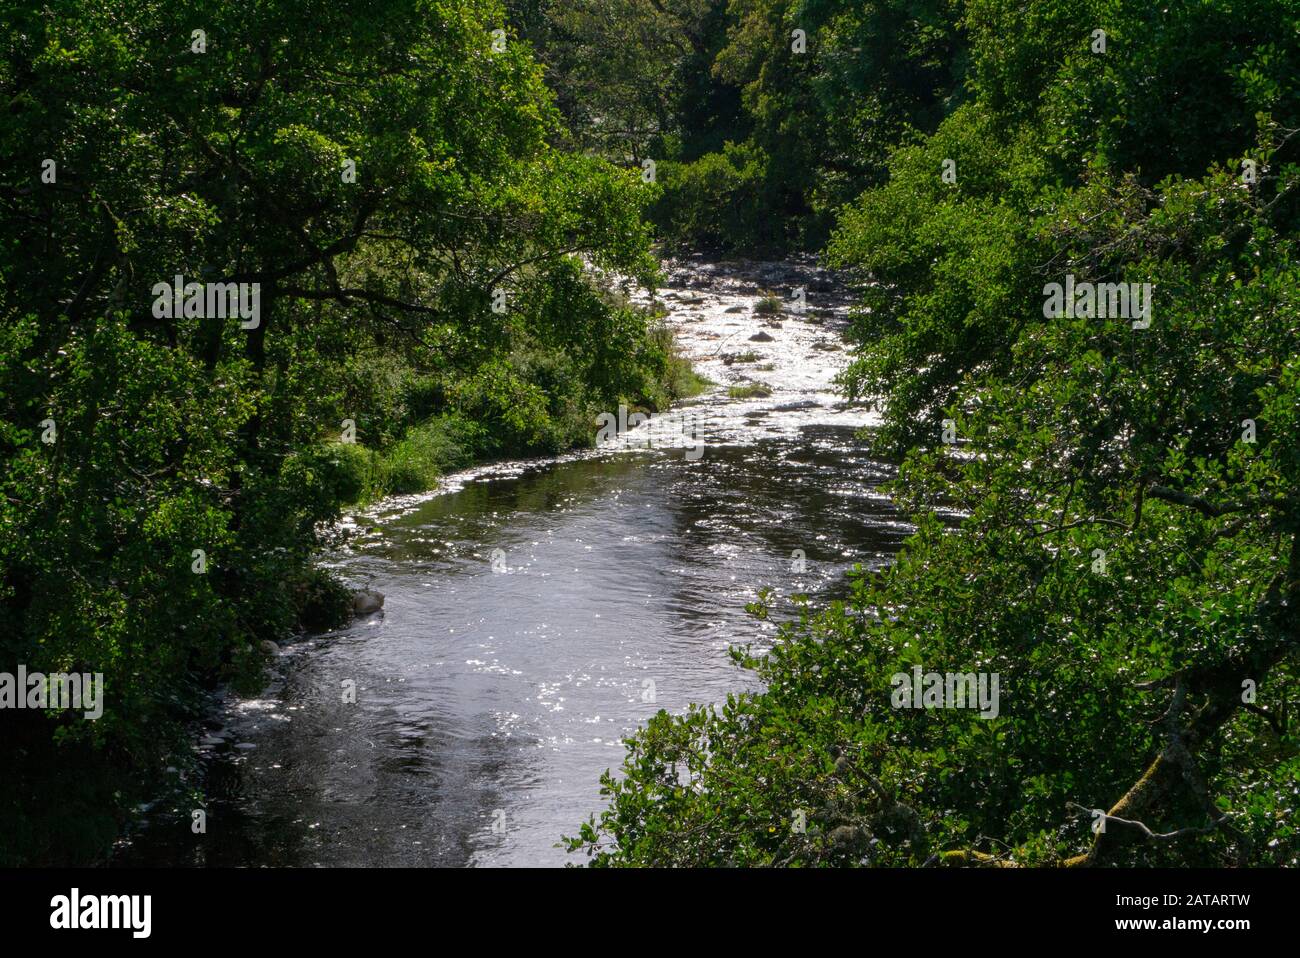 La rivière Nairn en été Inverness-shire Ecosse Royaume-Uni Banque D'Images